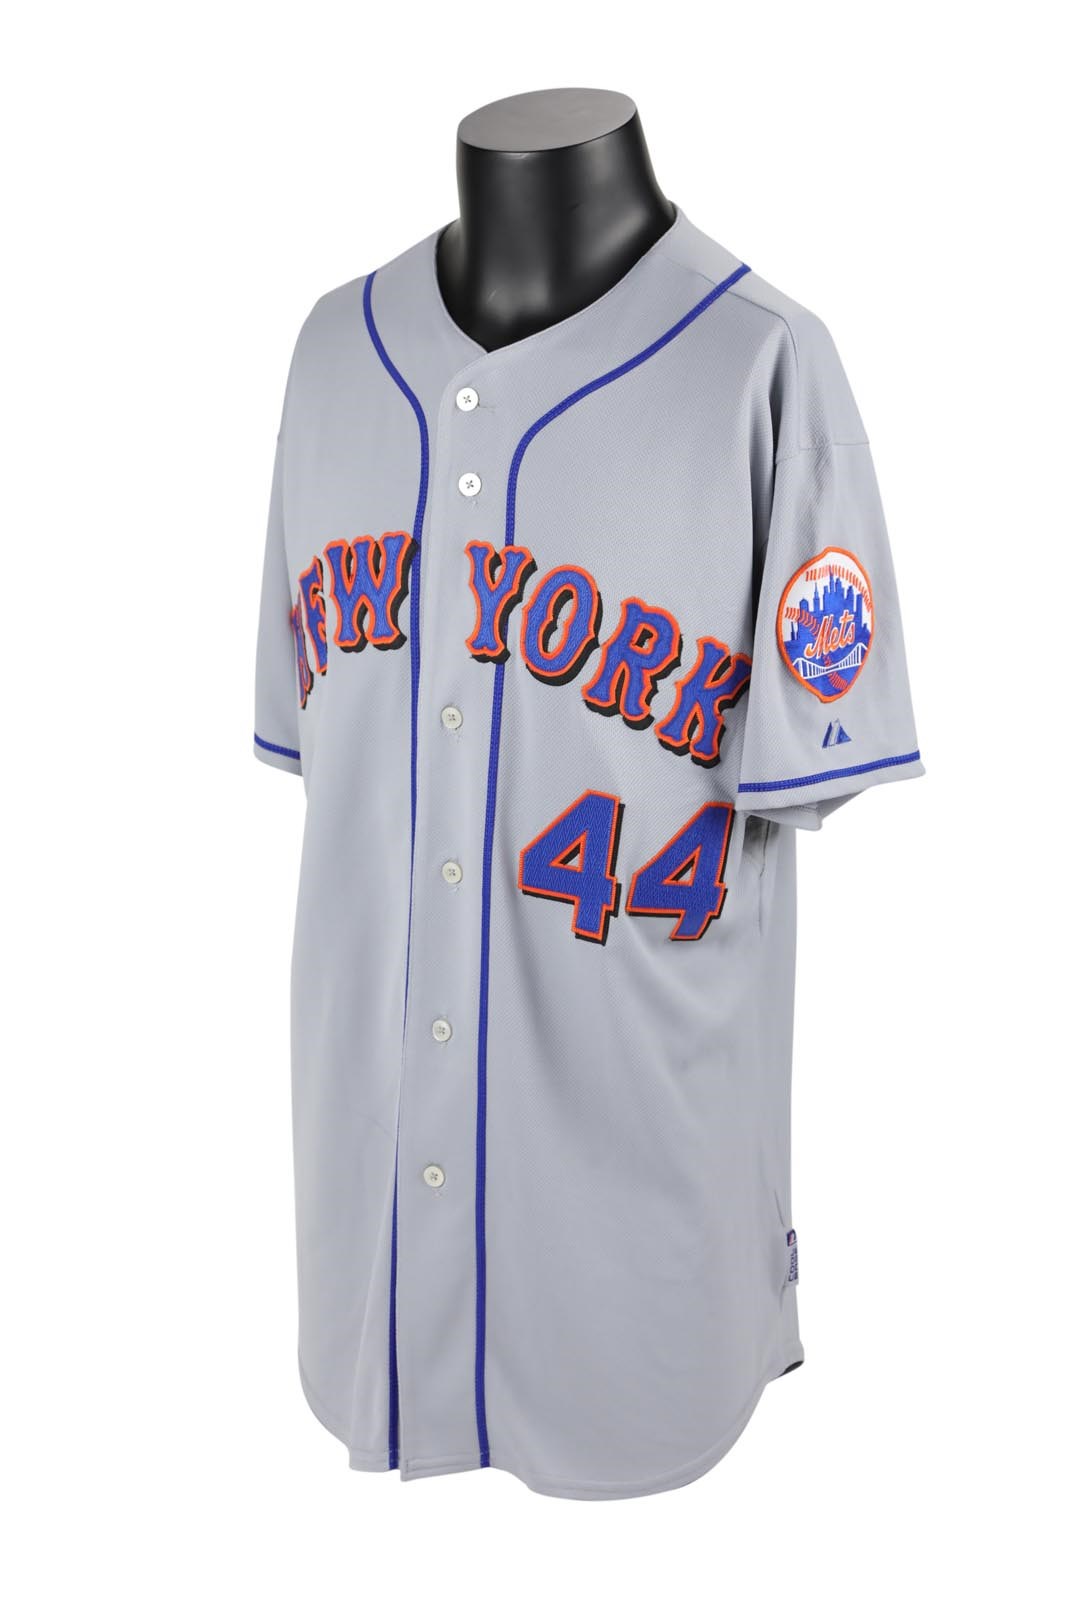 2008 Brady Clark New York Mets Game Worn Jersey (Mets Certified)